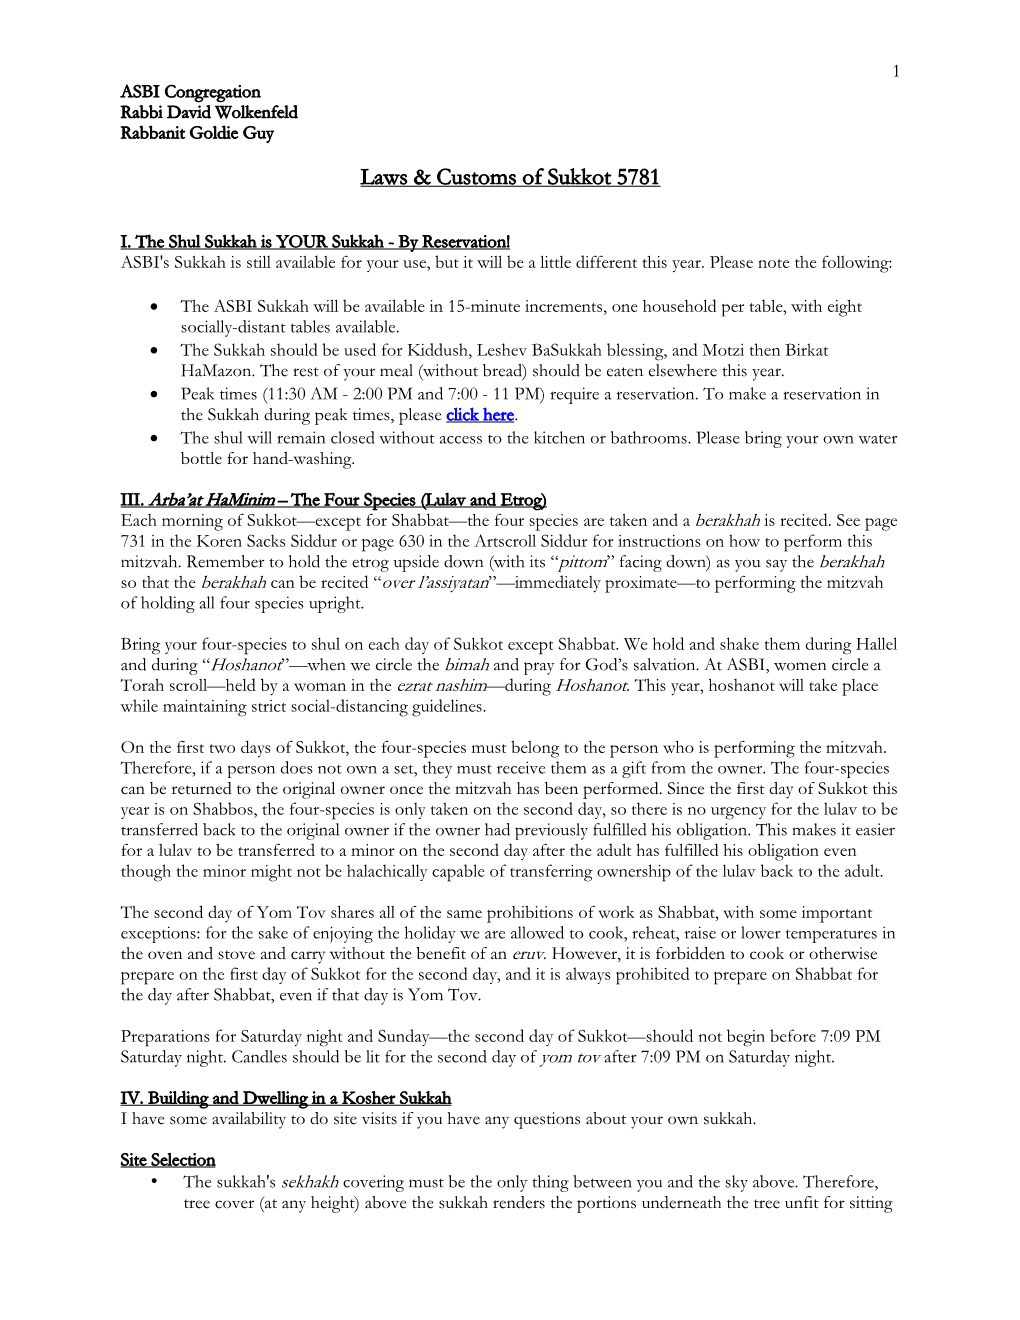 Laws & Customs of Sukkot 5781